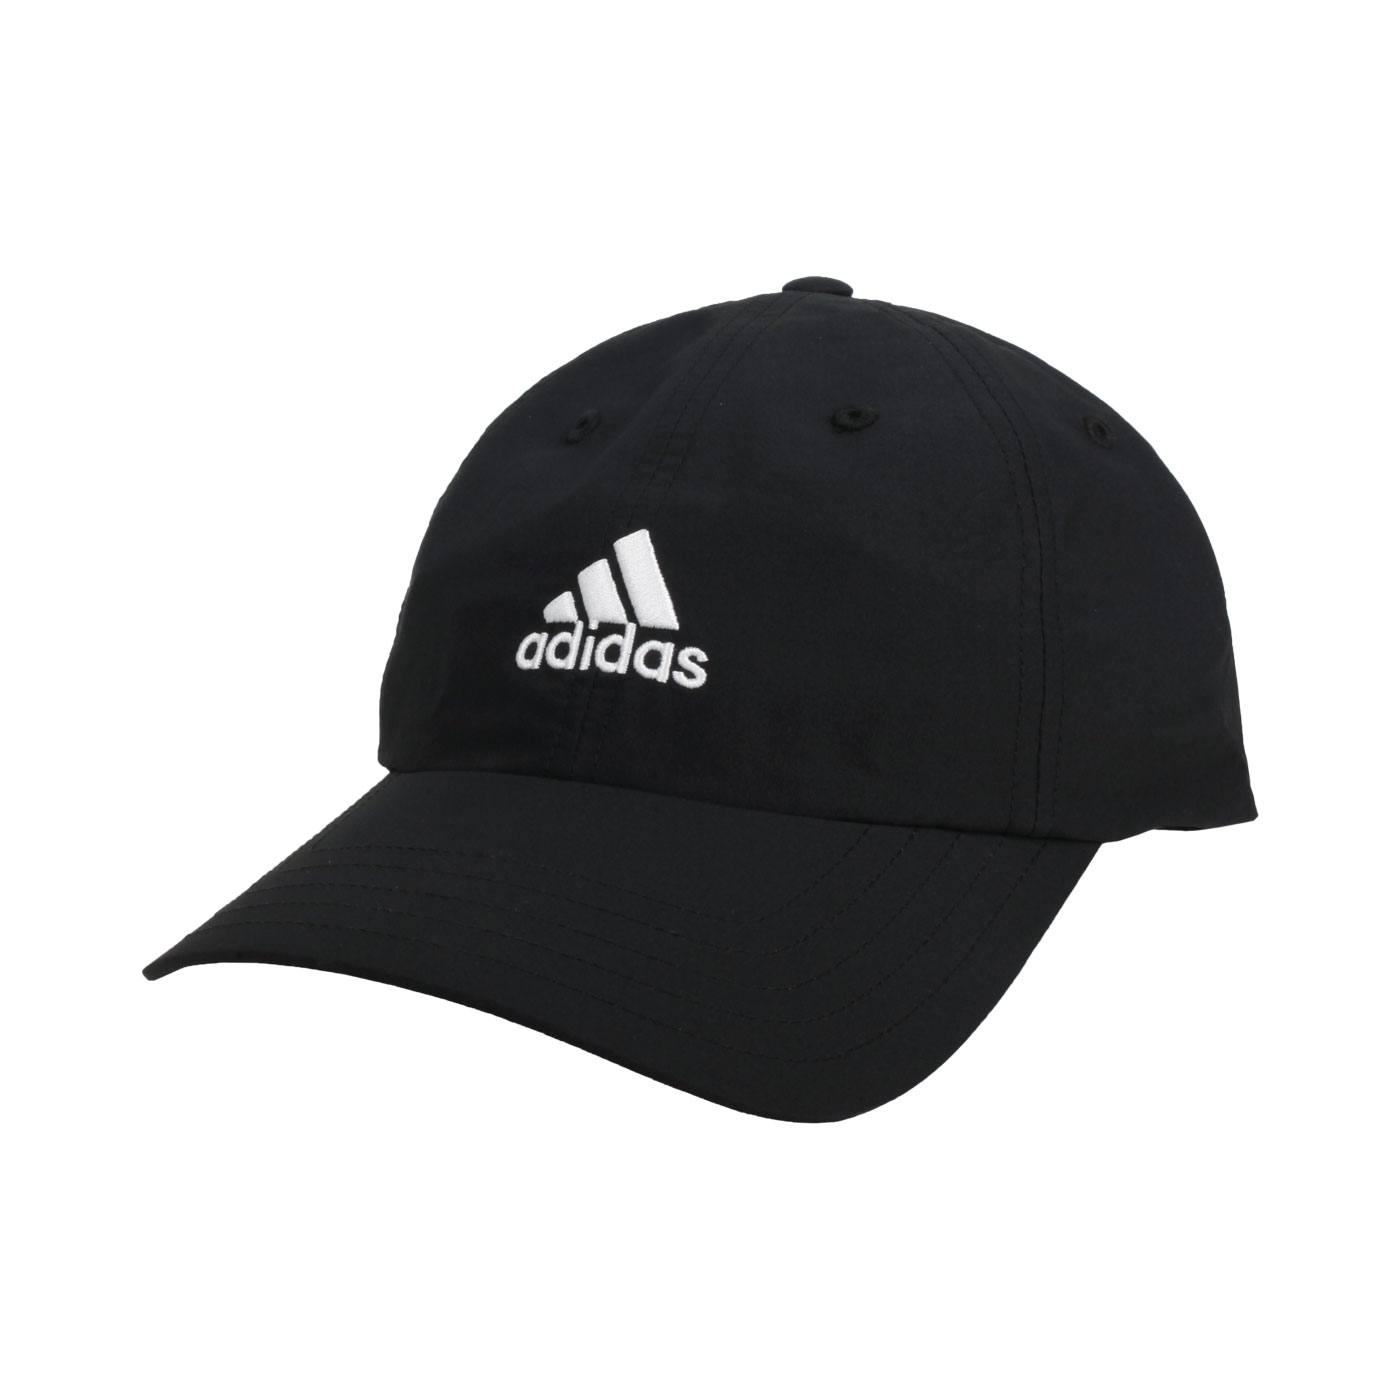 ADIDAS 棒球帽 GS2087 - 黑白